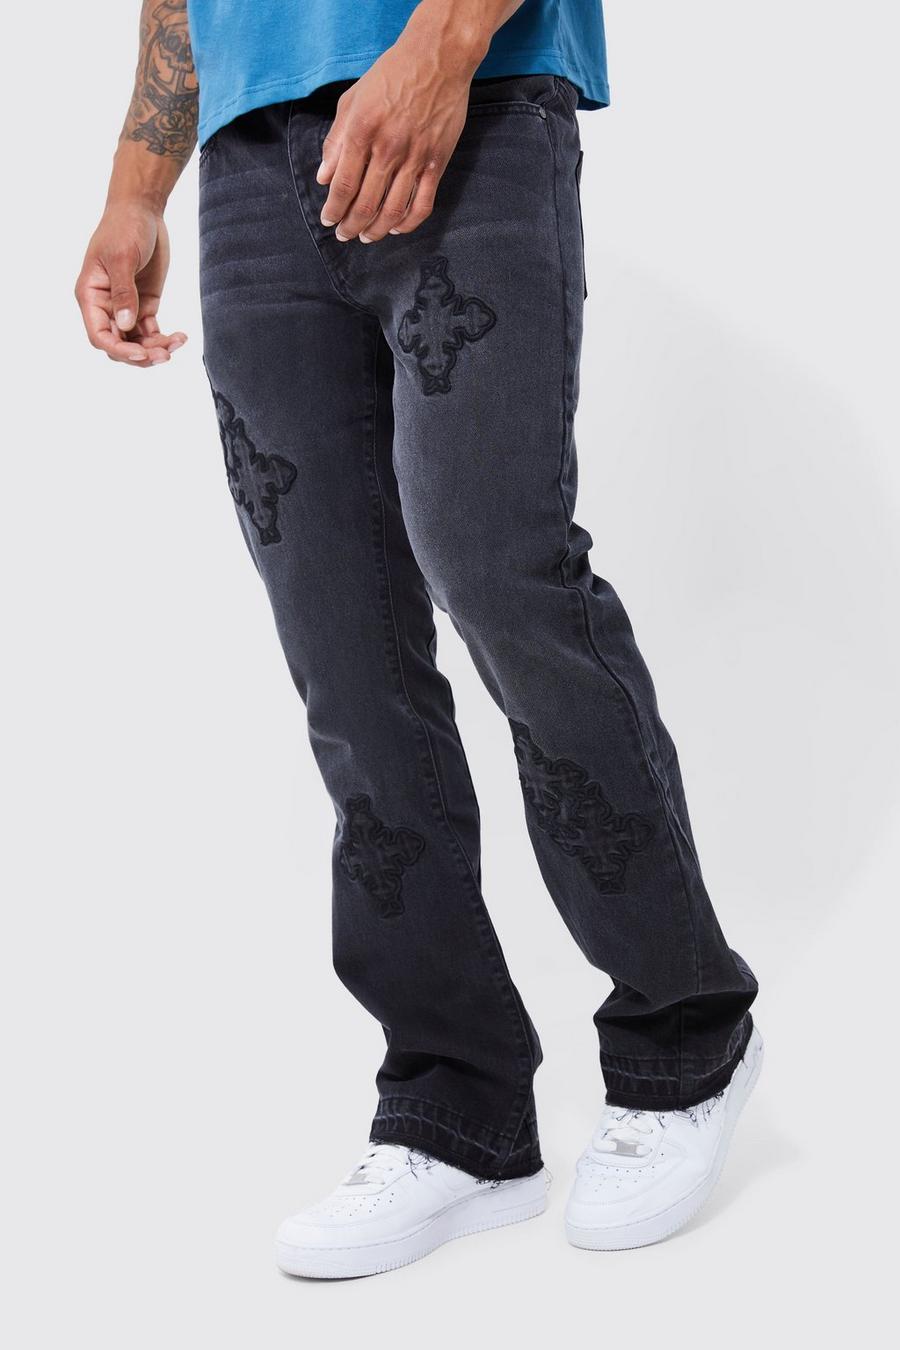 Washed black Jeans i slim fit med korsade band